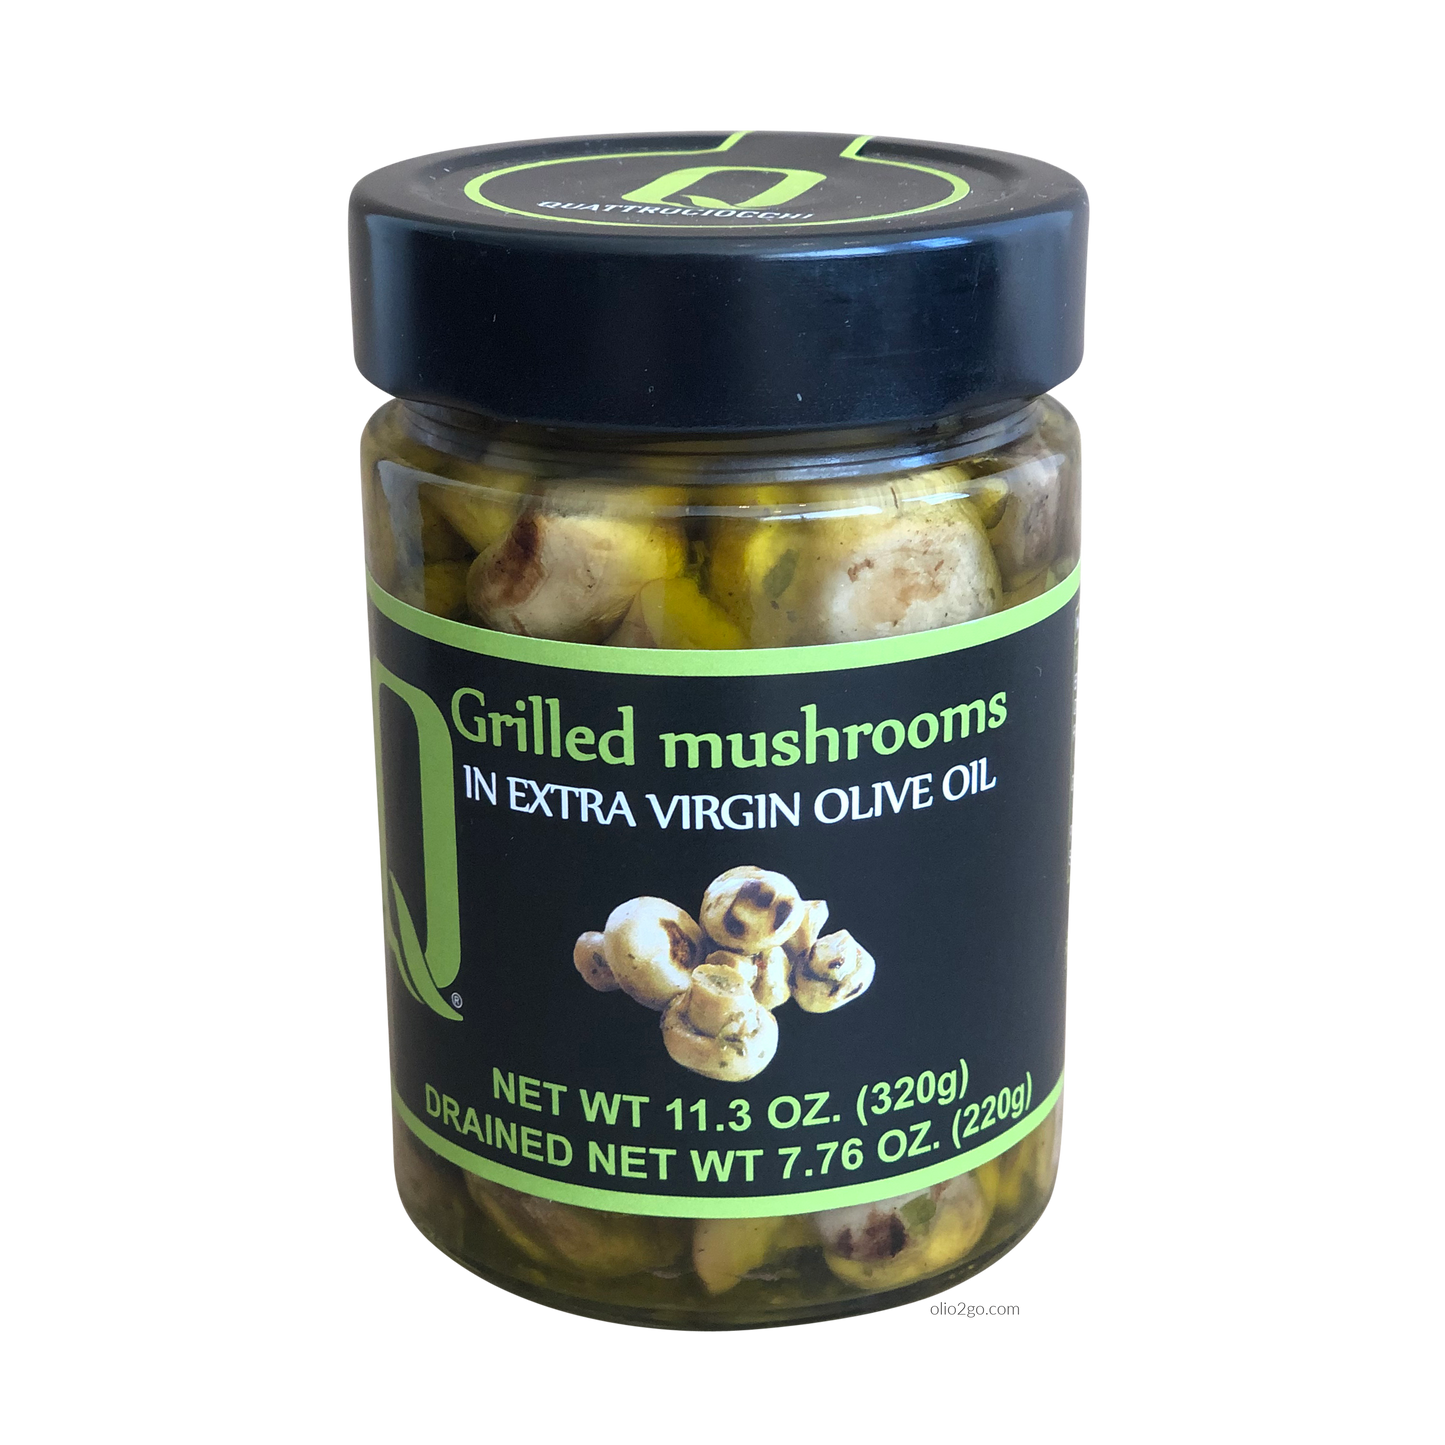 Quattrociocchi Grilled Funghi Mushrooms QUA-063